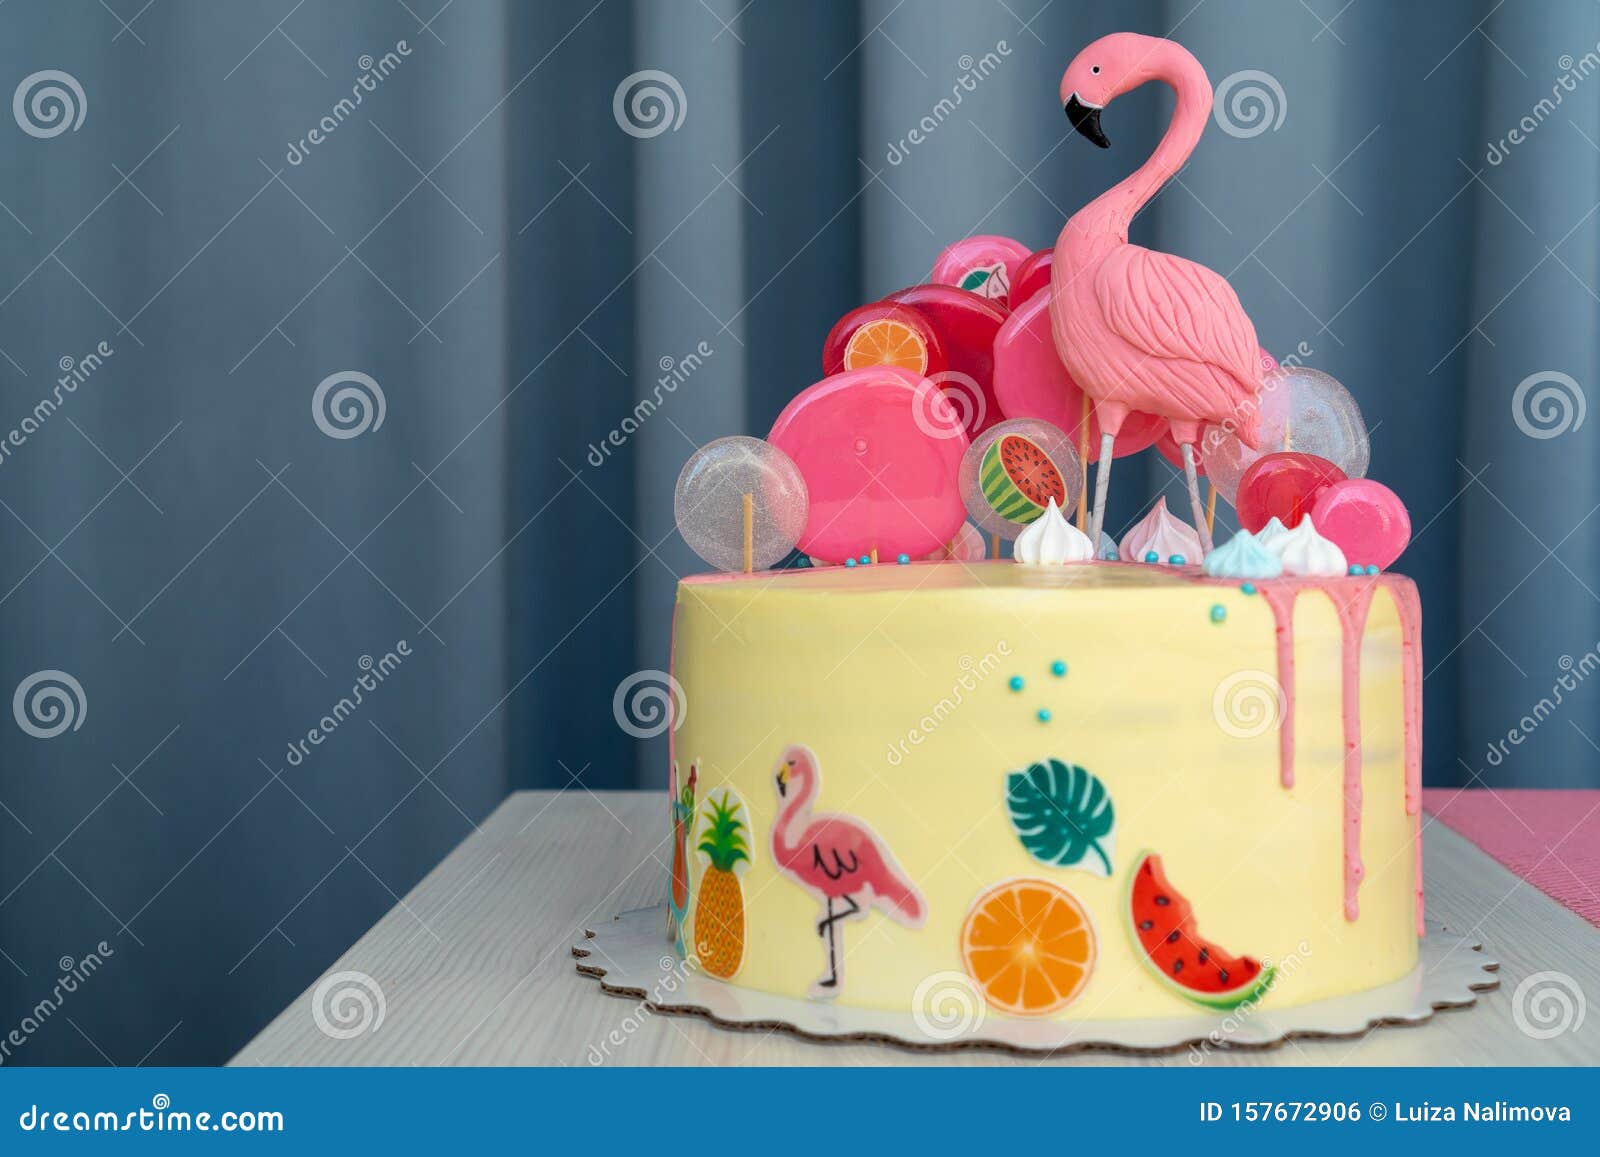 夏威夷派对上的火烈鸟蛋糕桌上的儿童生日蛋糕库存照片 图片包括有